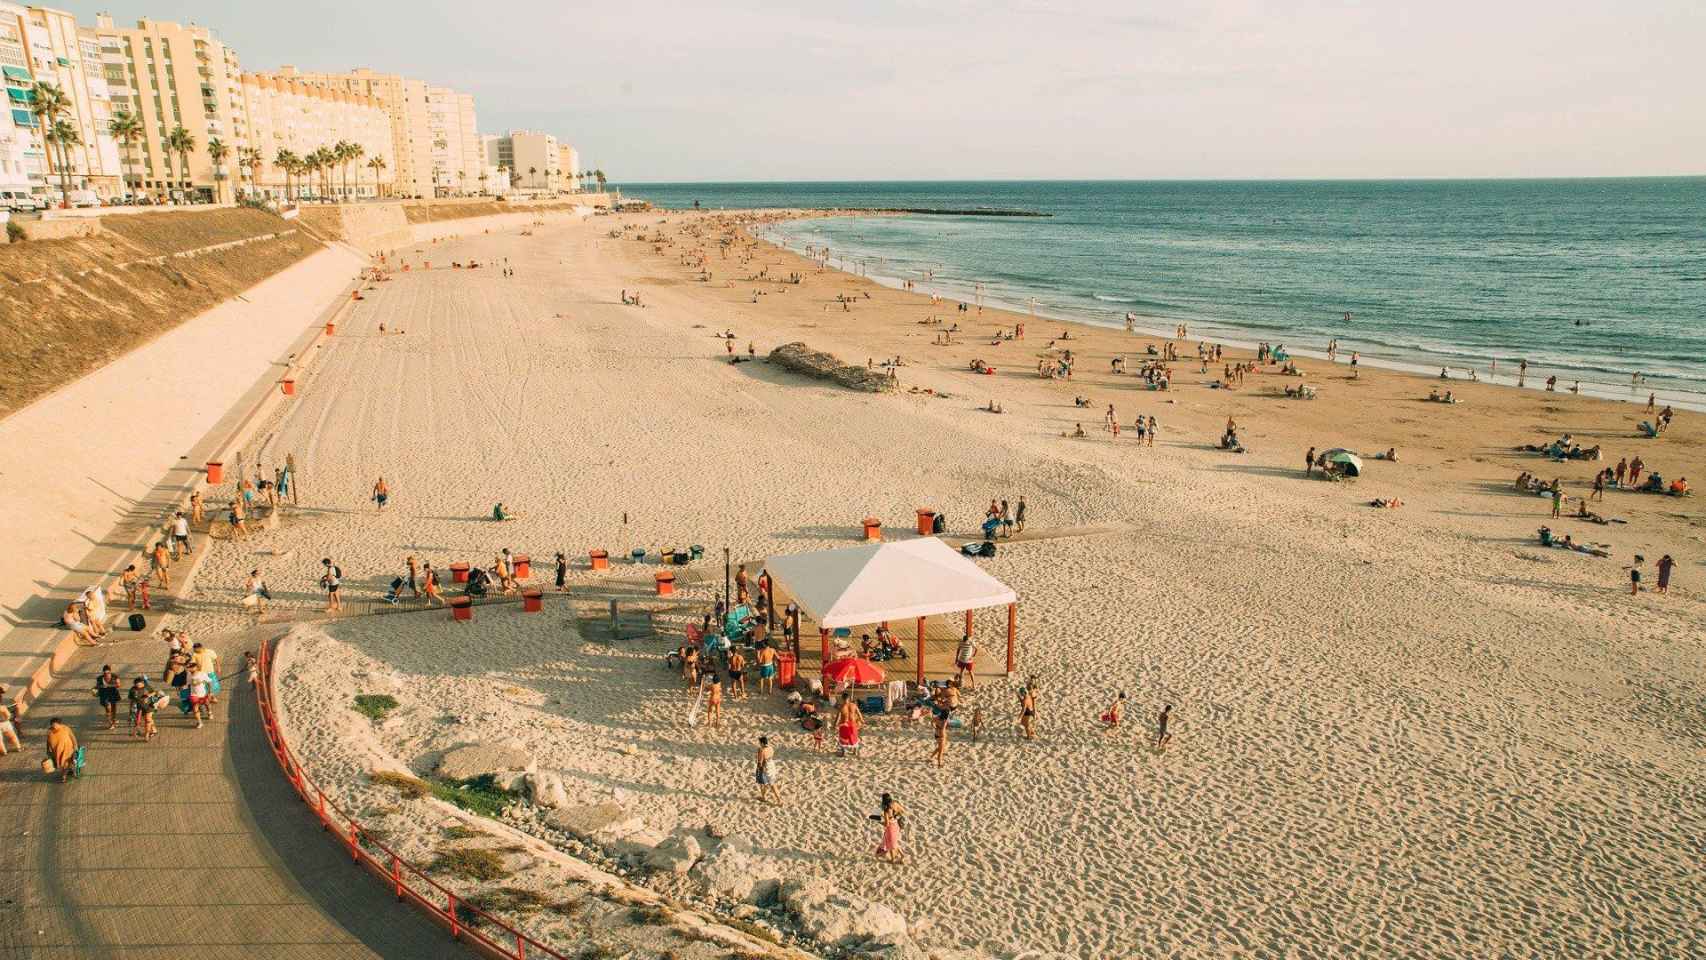 La playa de Cádiz, en España, uno de los principales destinos turísticos / CG